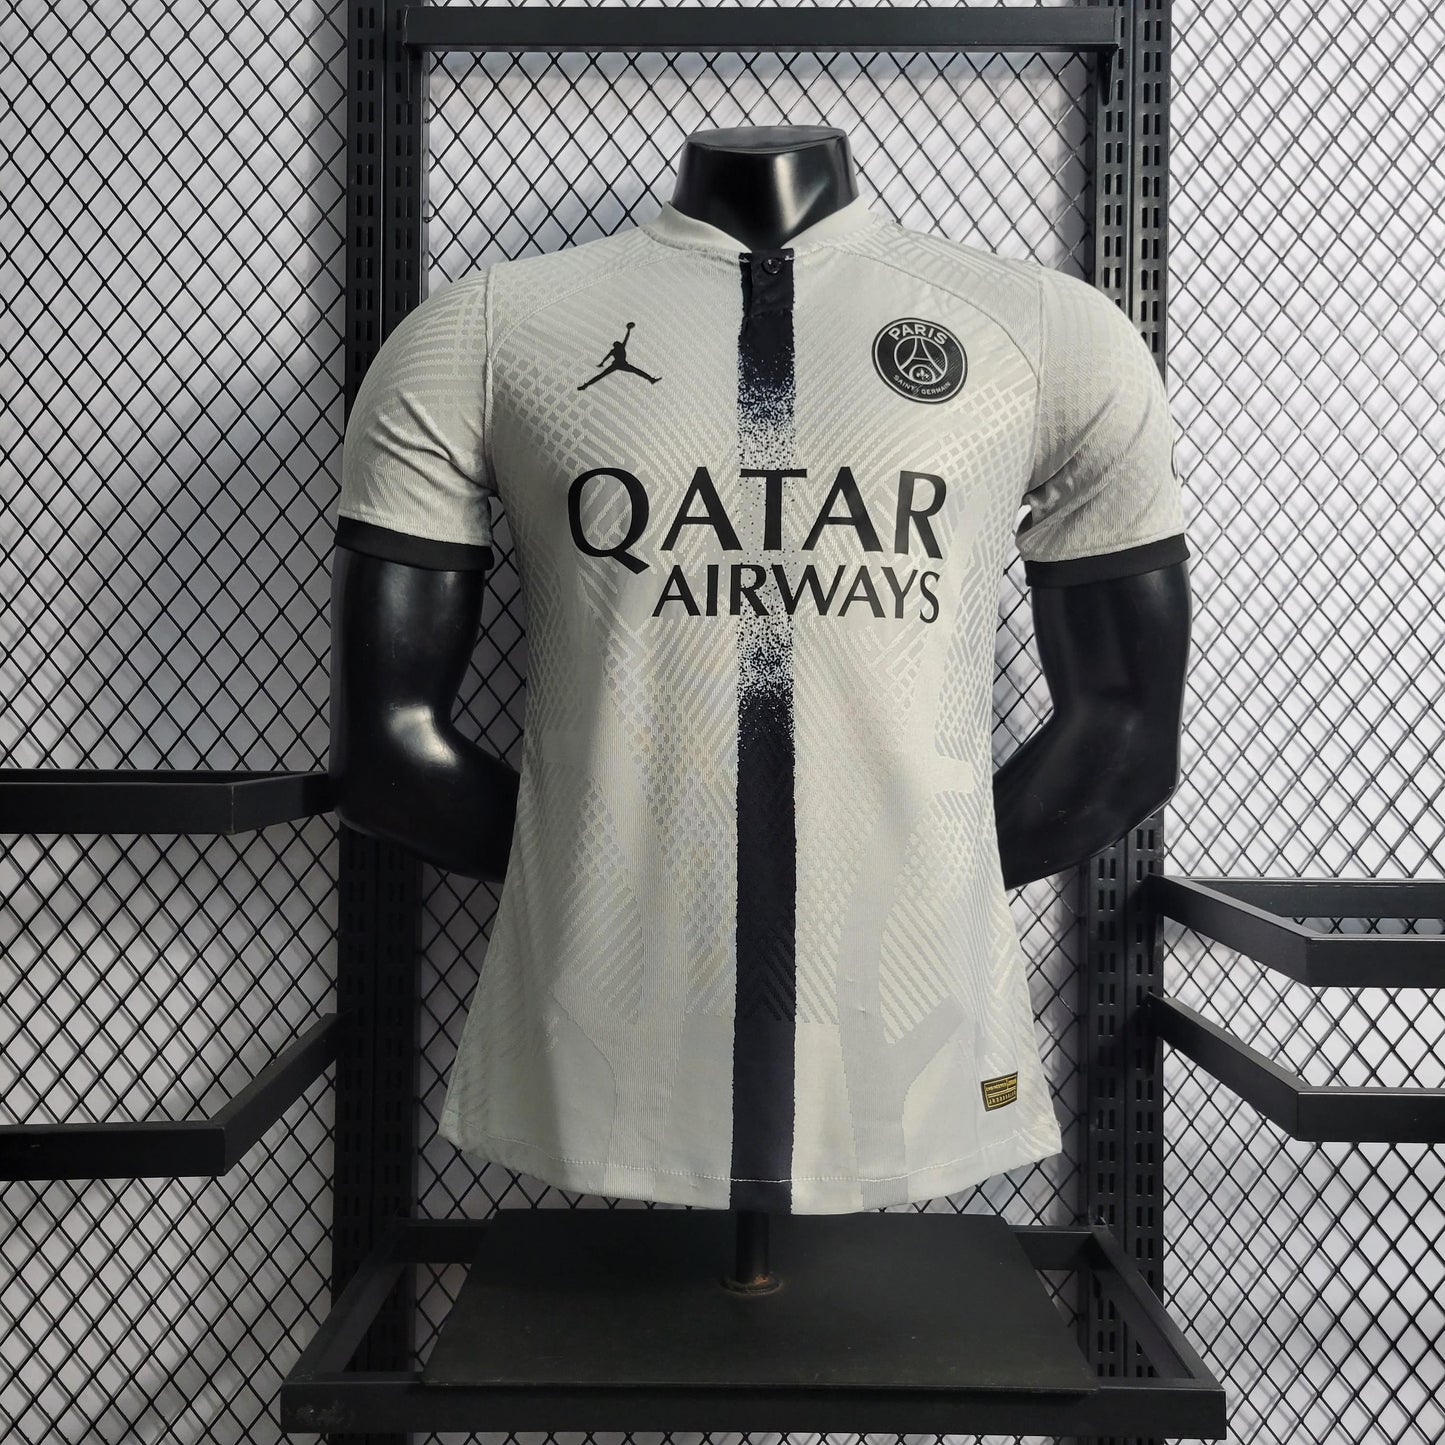 Create custom Paris Saint Germain jersey 2019/20 II Jordan with